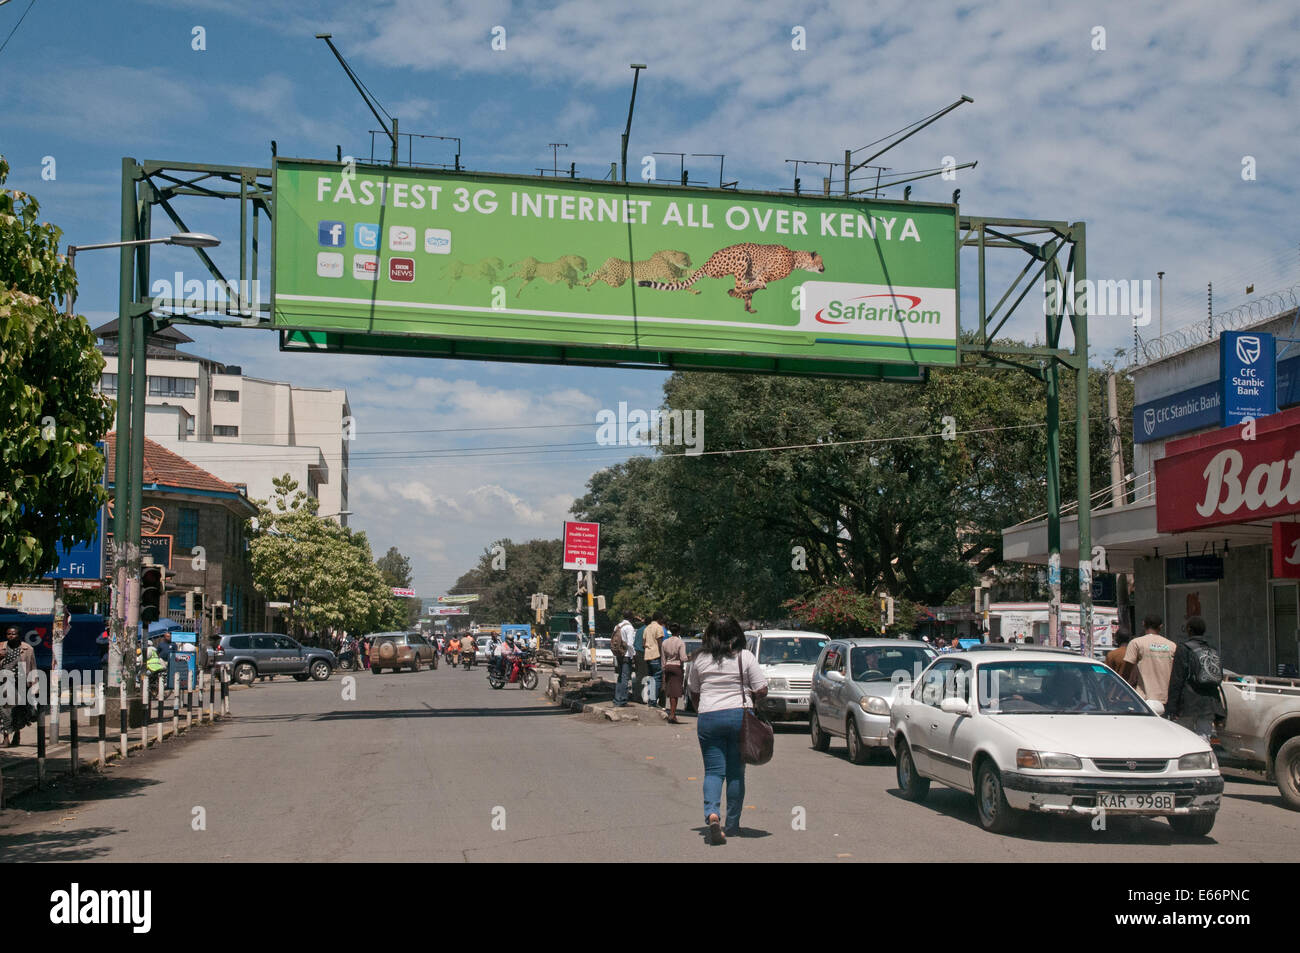 Personnes et de la circulation sur l'avenue Kenyatta Nakuru Kenya Afrique de l'Est avec l'accumulation de la publicité pour le réseau 3G Banque D'Images